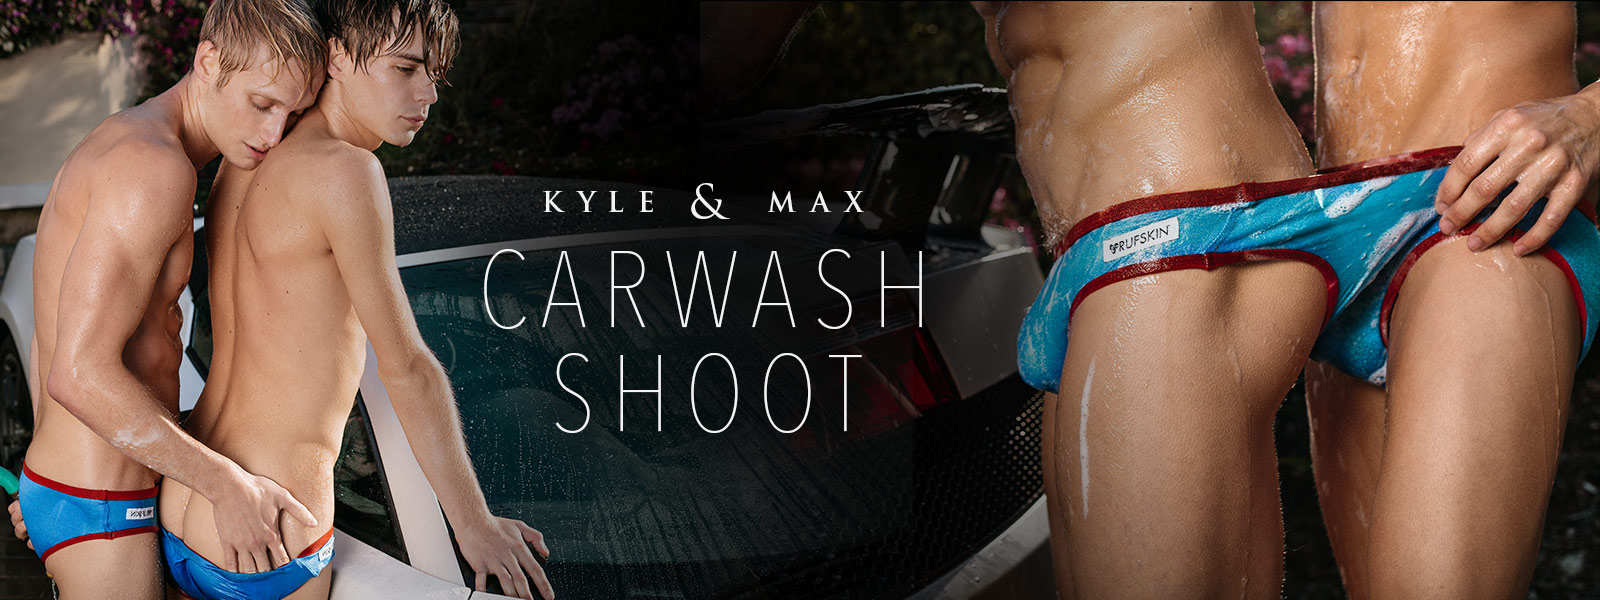 Kyle & Max: Carwash Shoot